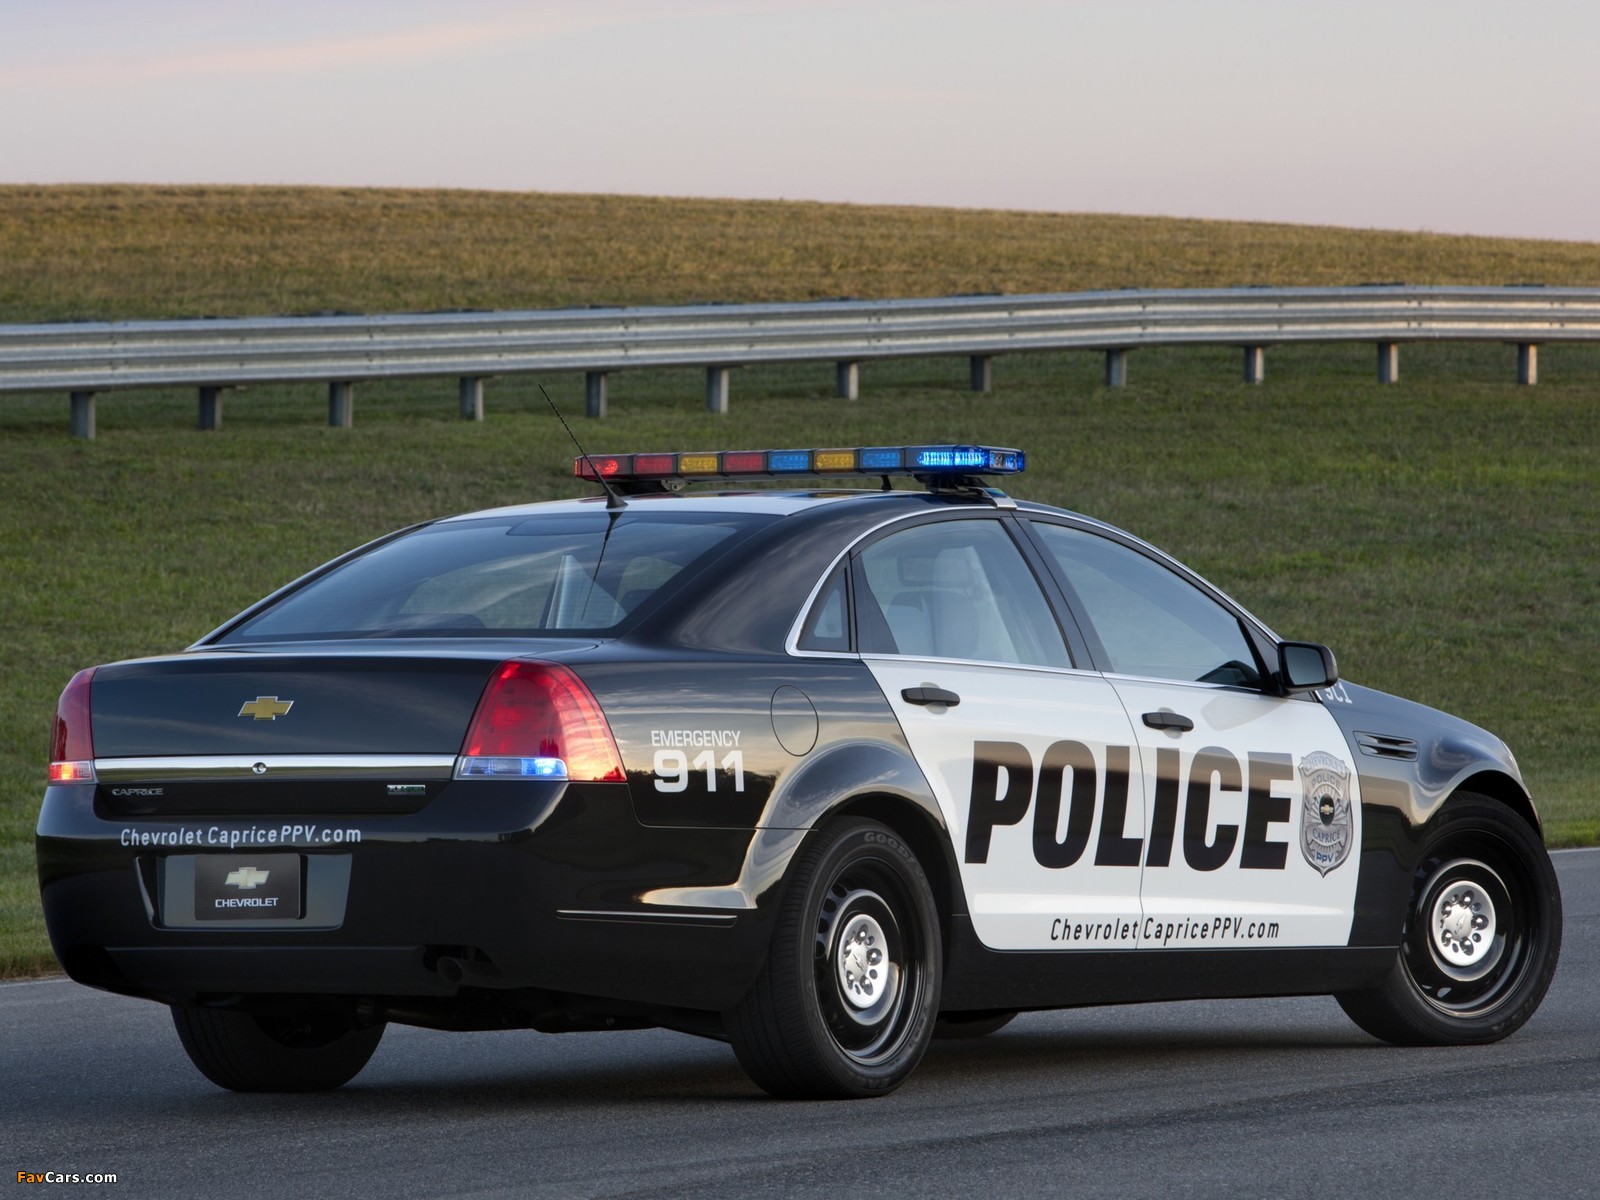 Chevrolet Caprice Police Patrol Vehicle 2010 photos (1600 x 1200)